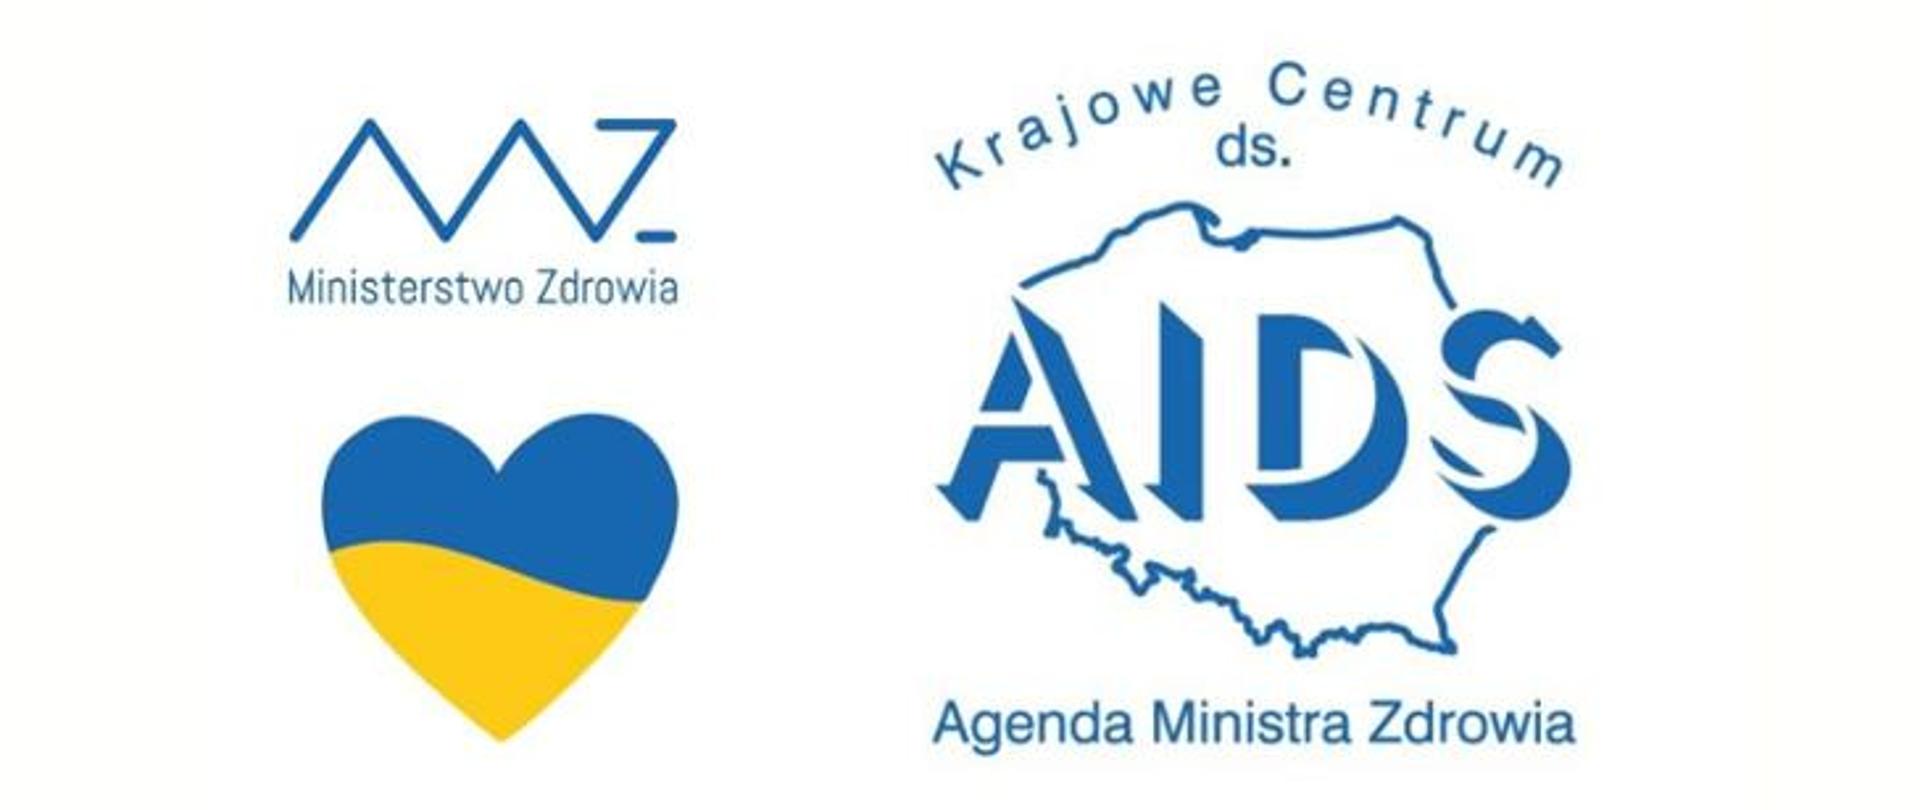 Informacje na temat HIV i AIDS - materiał w języku polskim i ukraińskim